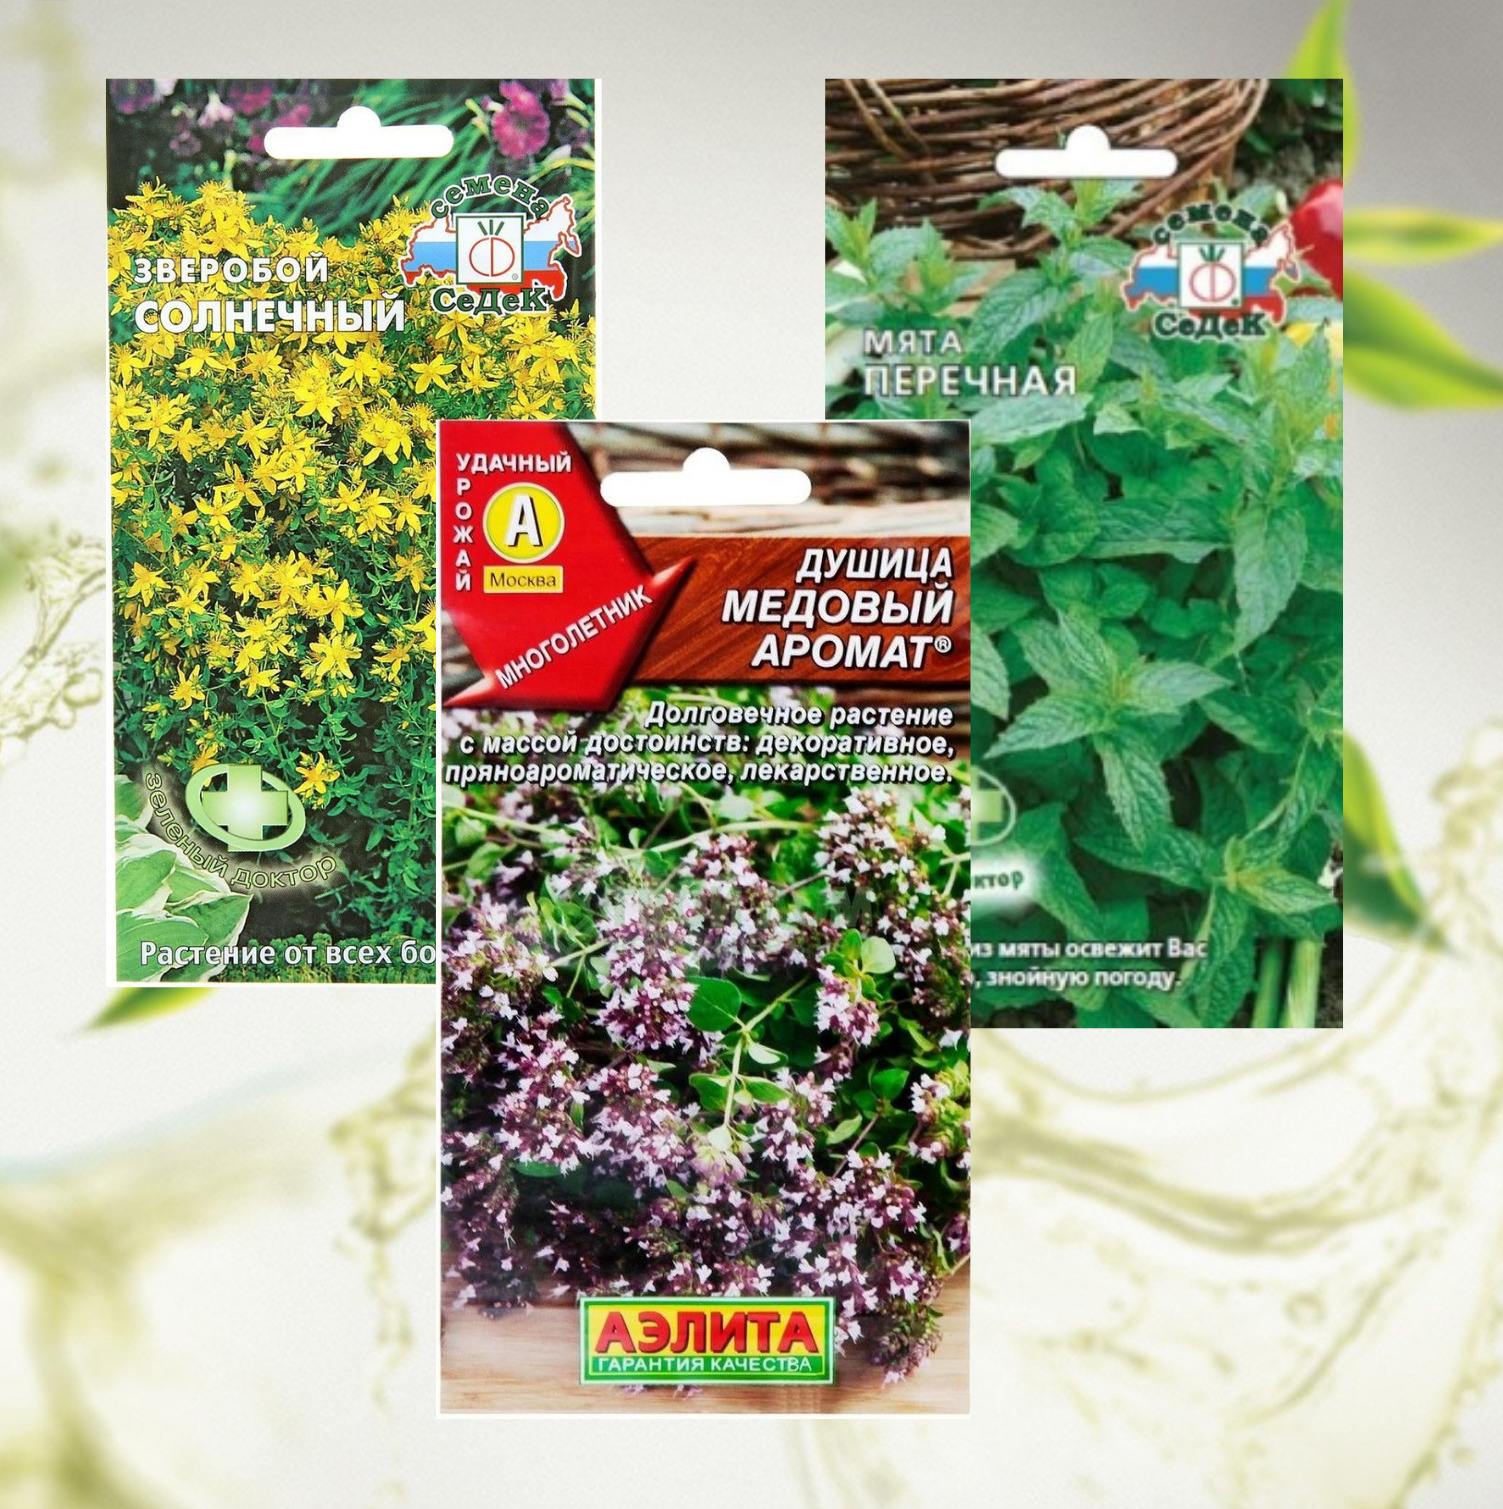 Зверобой чай в пакетиках. Ароматические и лекарственные растения Ялта 2018. Семена ароматных квестов.